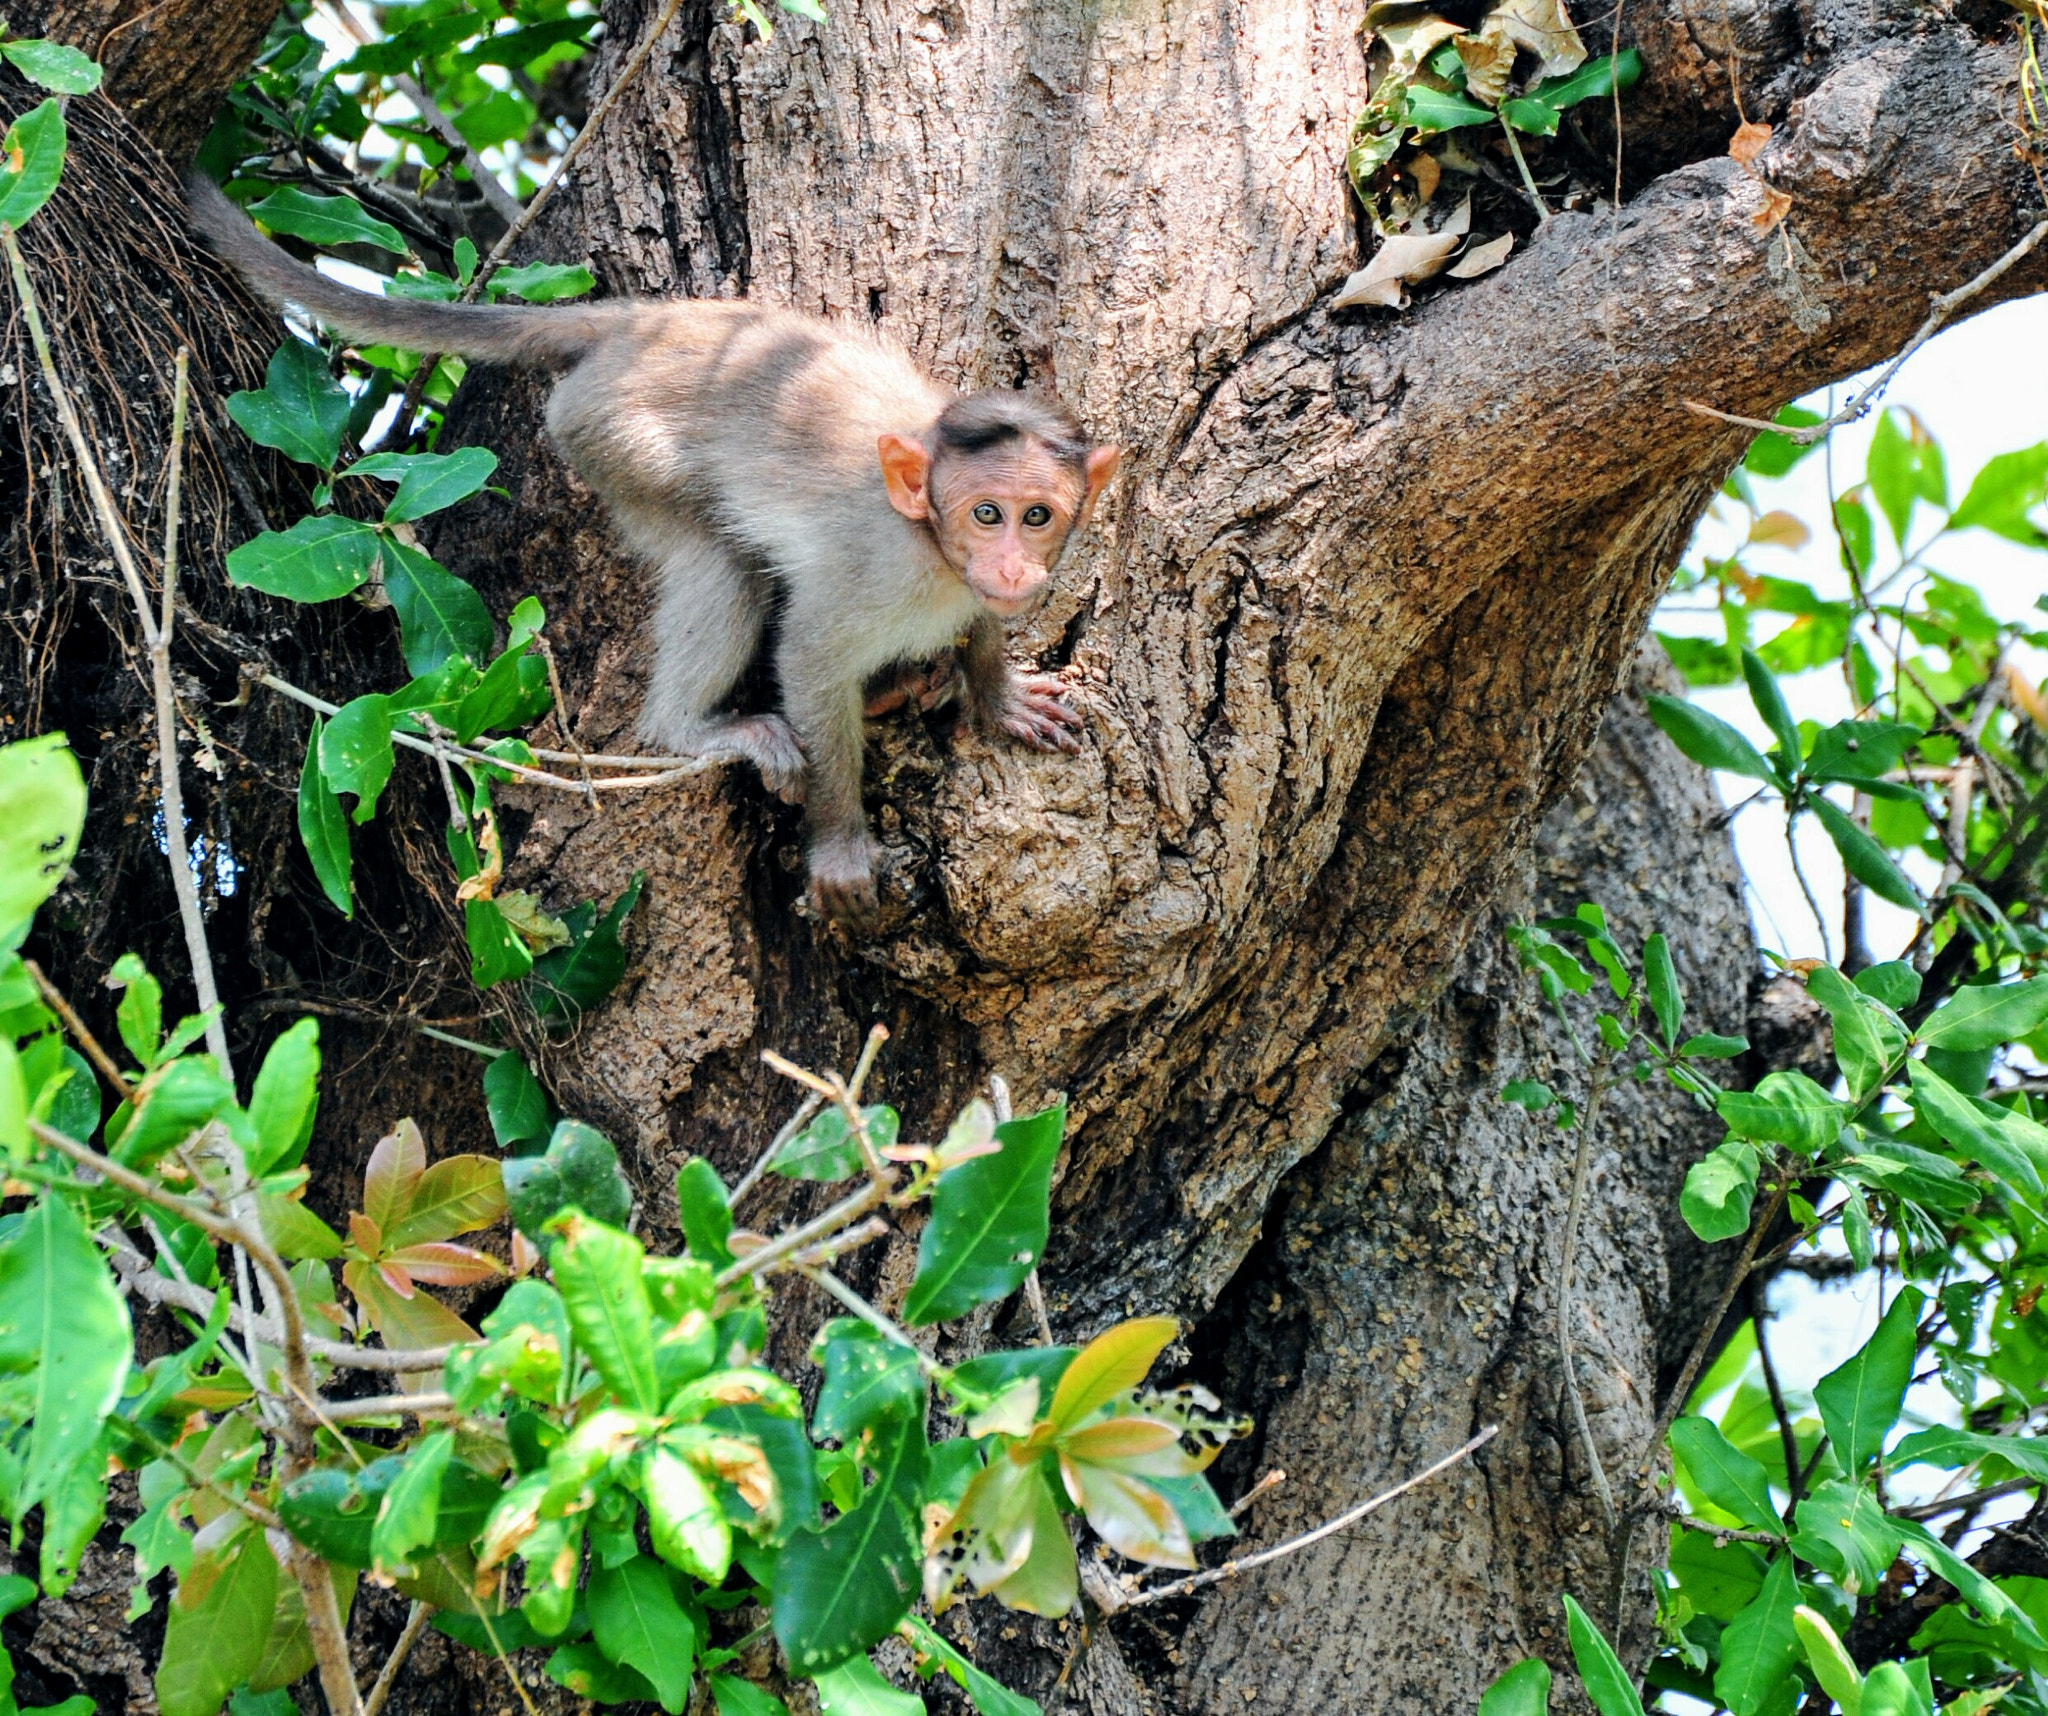 Nikon D700 + Nikon AF-S Nikkor 70-300mm F4.5-5.6G VR sample photo. Baby monkey on tree  photography